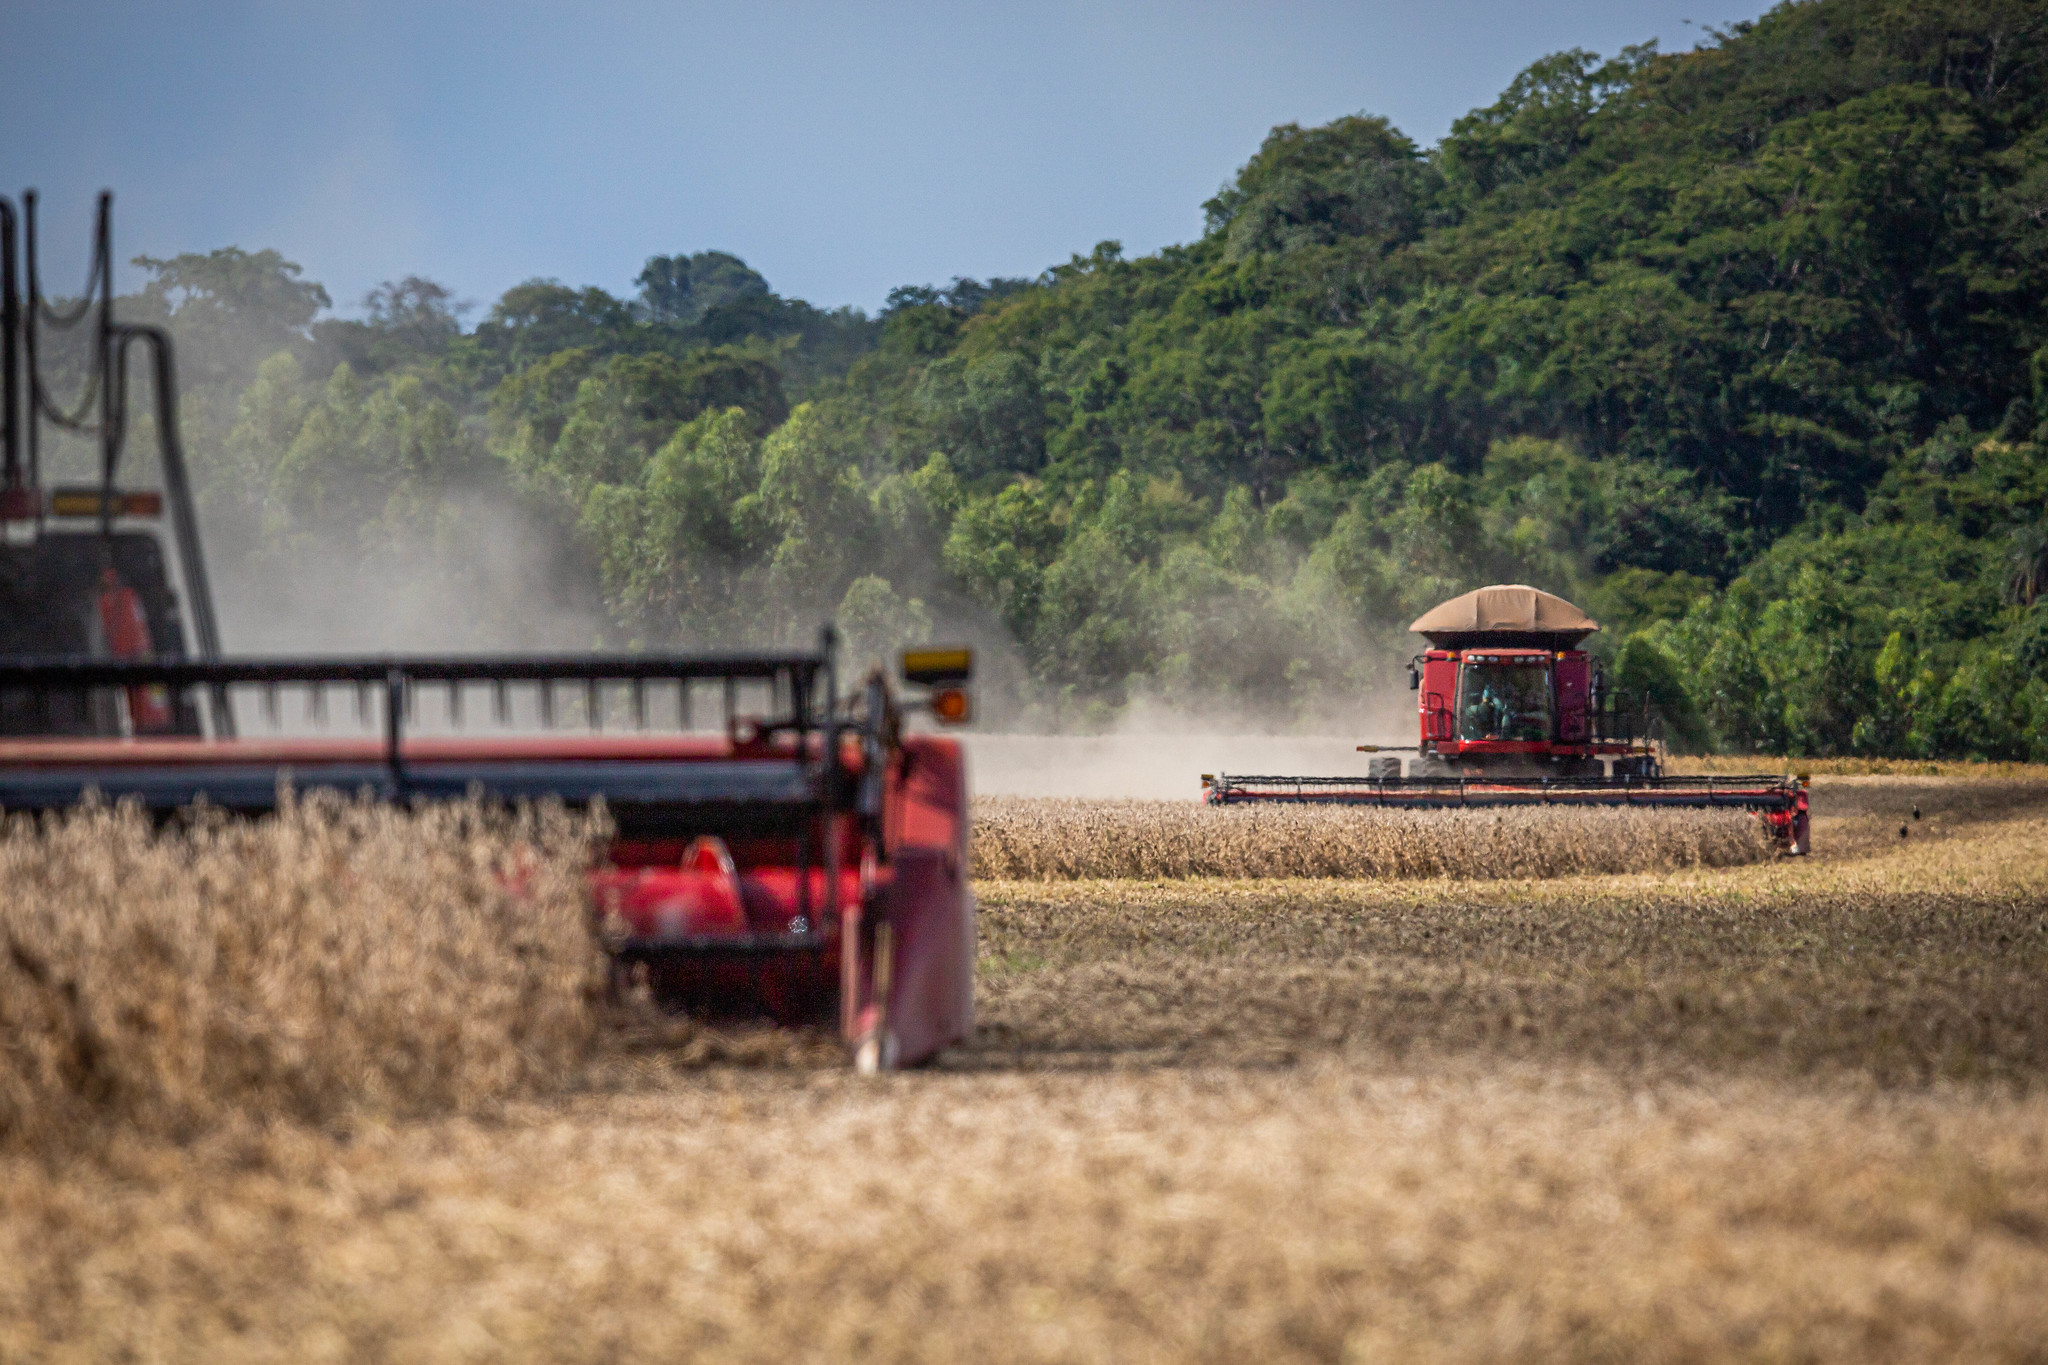 Vendas de máquinas agrícolas caem 38,9% no primeiro bimestre